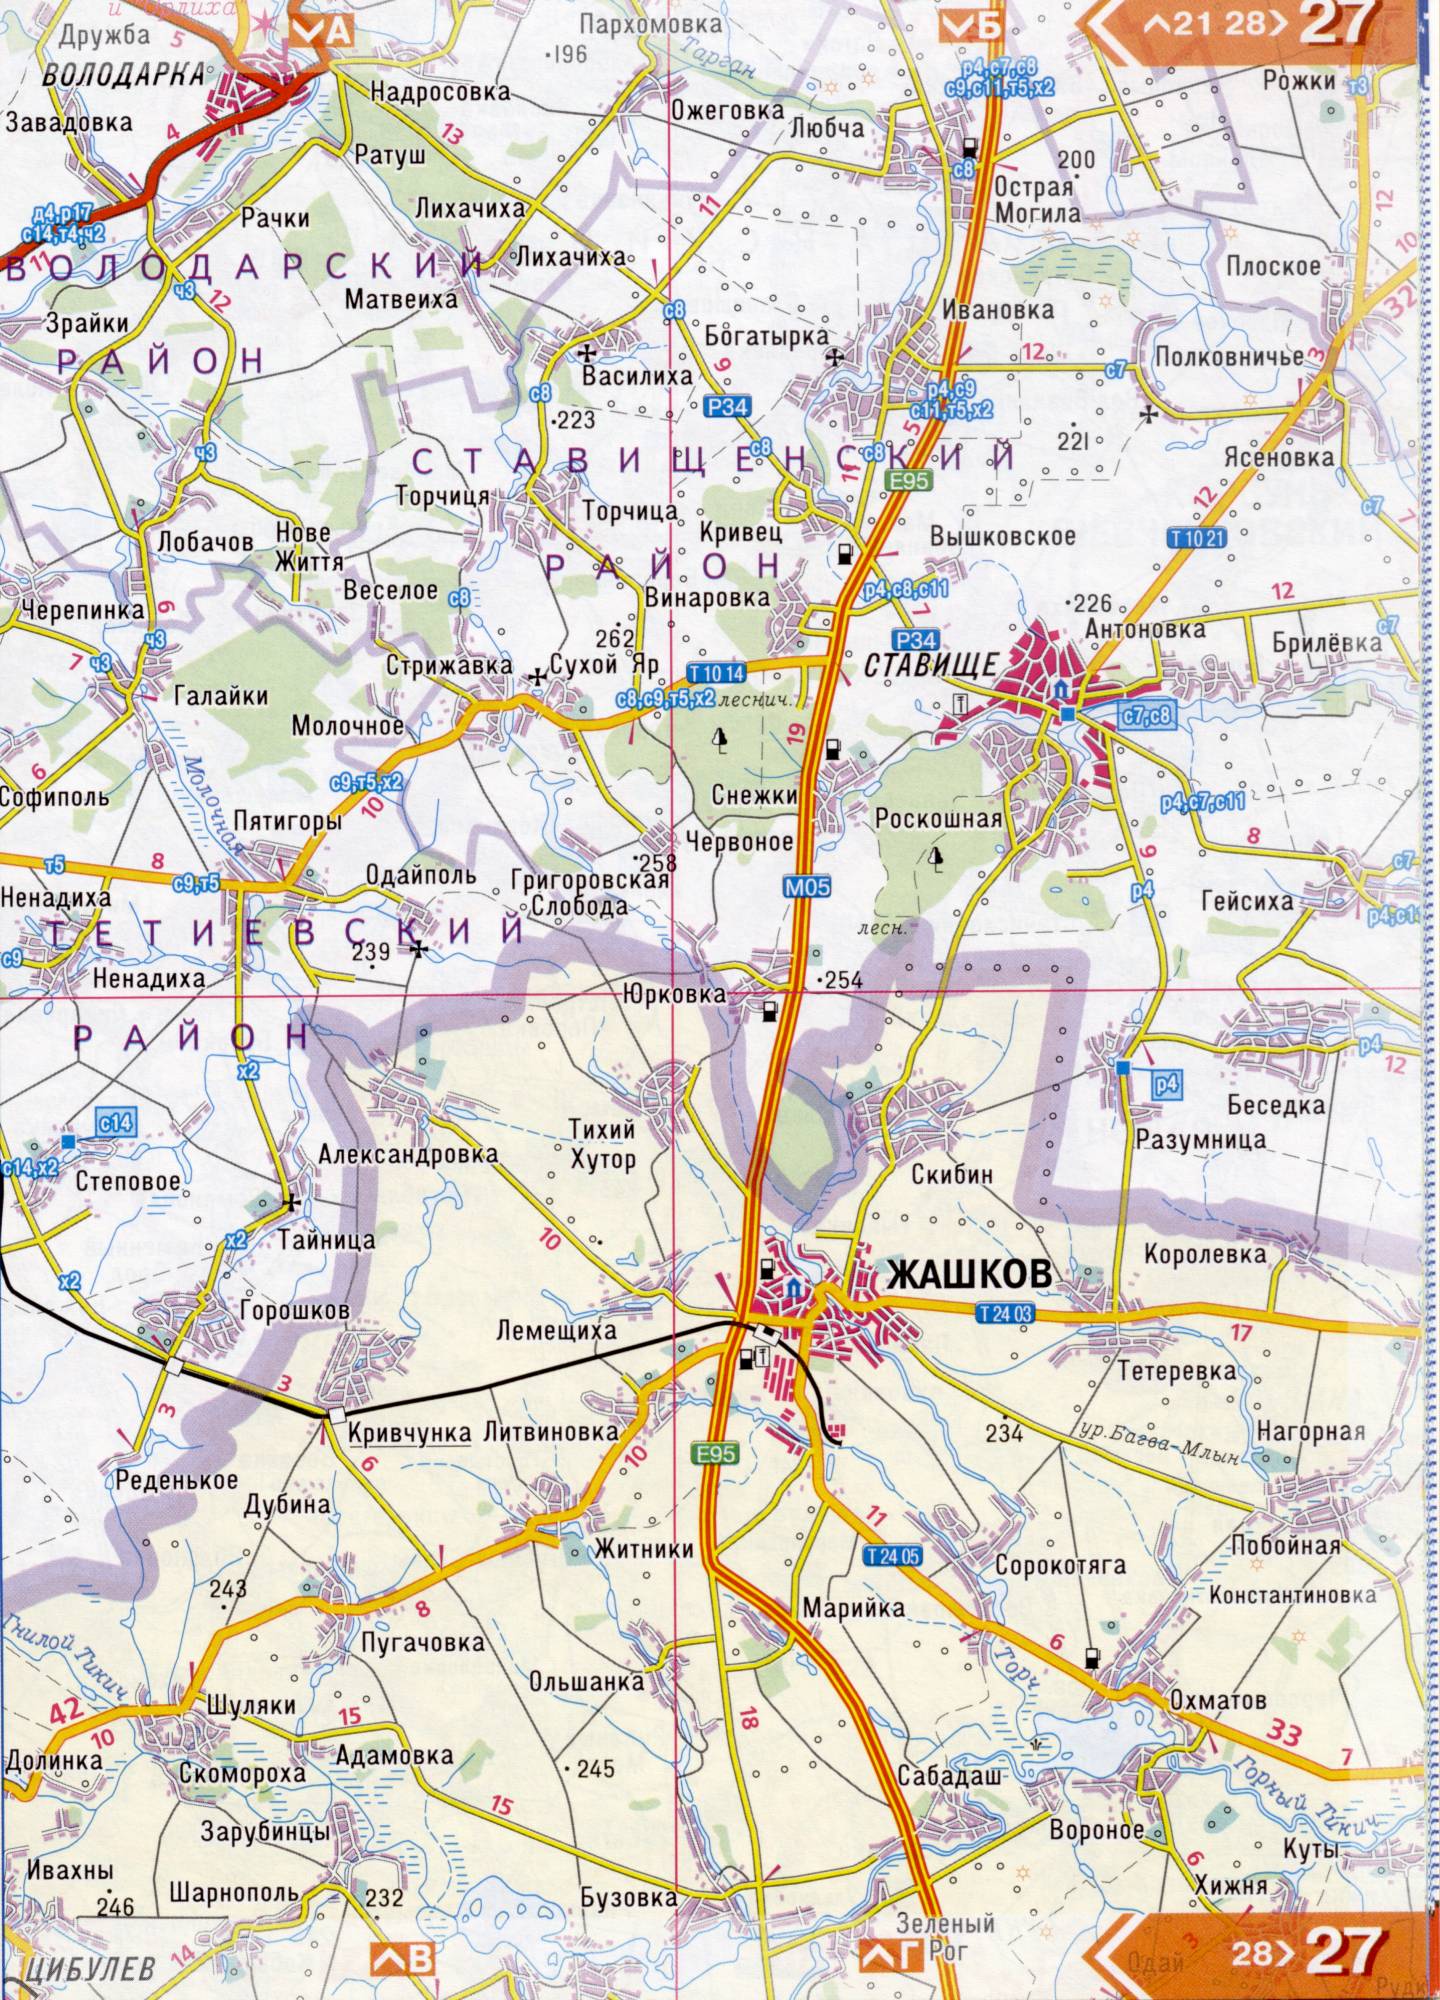 Atlas von der Region Kiew. Eine detaillierte Karte der Region Kiew von dem Atlas von Autobahnen. Kiewer Gebiet auf einer detaillierten Karte Maßstab 1cm = 3km. Frei, B5 - Zhashkiv